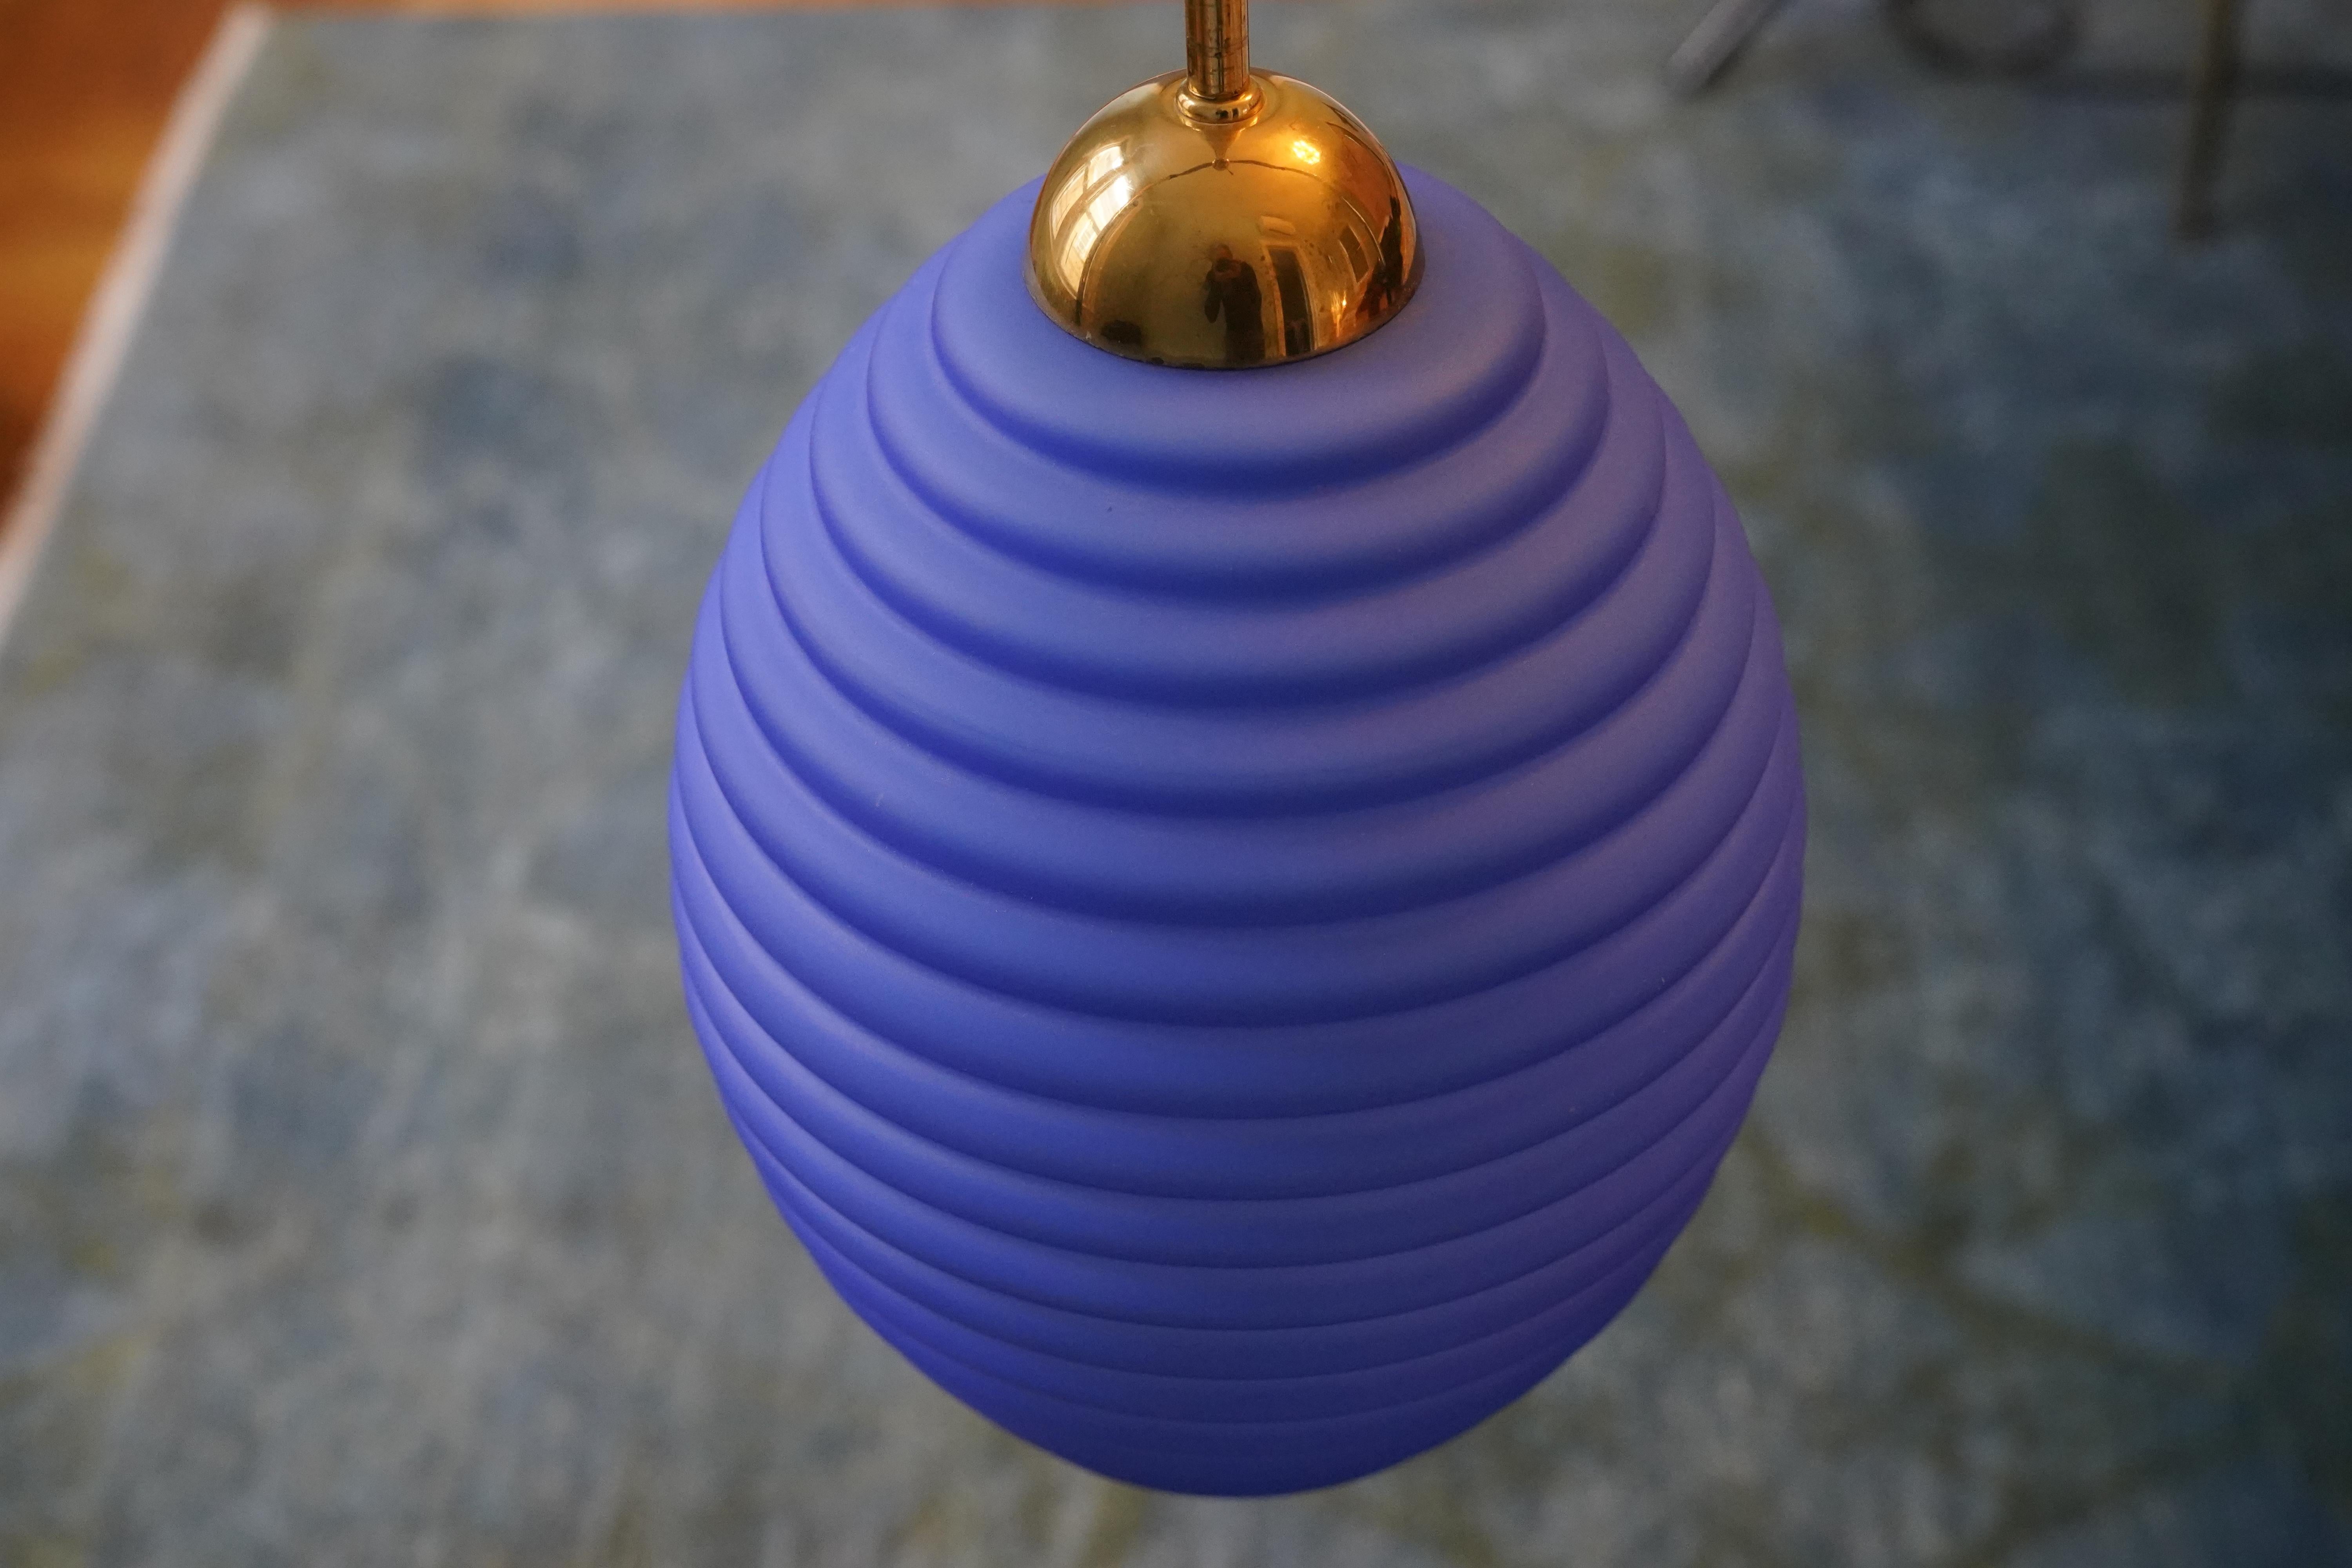 Lanterne suédoise en verre bleu royal, 1950 
Lumière descendante, Suède, années 1950.
La tige est en laiton et le couvercle est en laiton. L'abat-jour est un verre ovale bleu royal.
Recâblé pour les États-Unis 